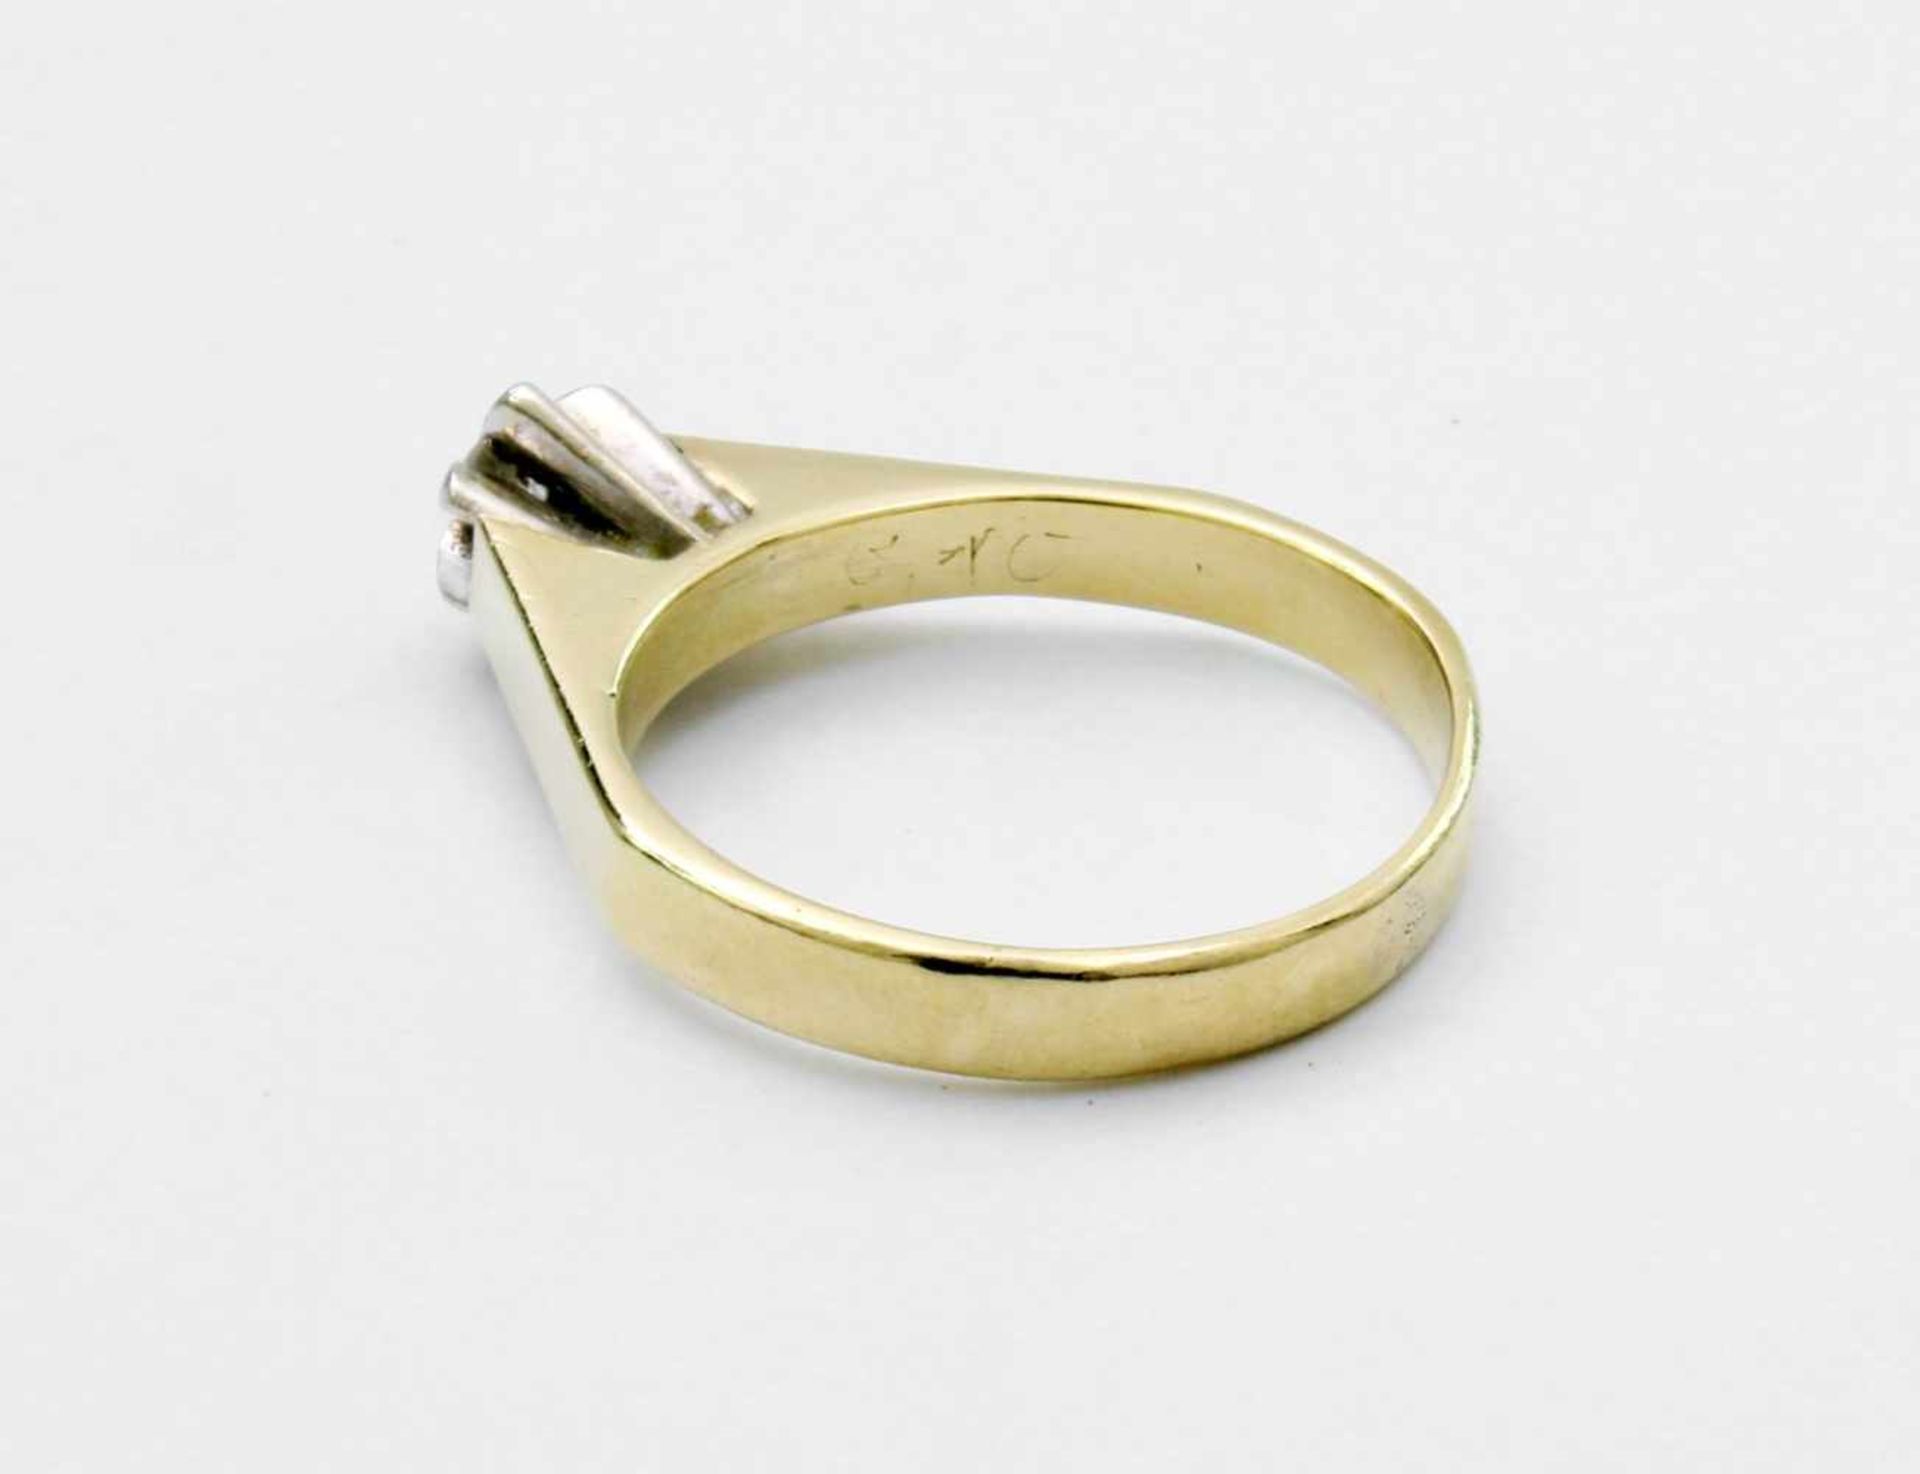 Gelbgold / Weißgold Ring mit Brillant GG / WG 585, auf Kronenfassung WG-Solitair, ca. 0,1 ct., - Bild 3 aus 3